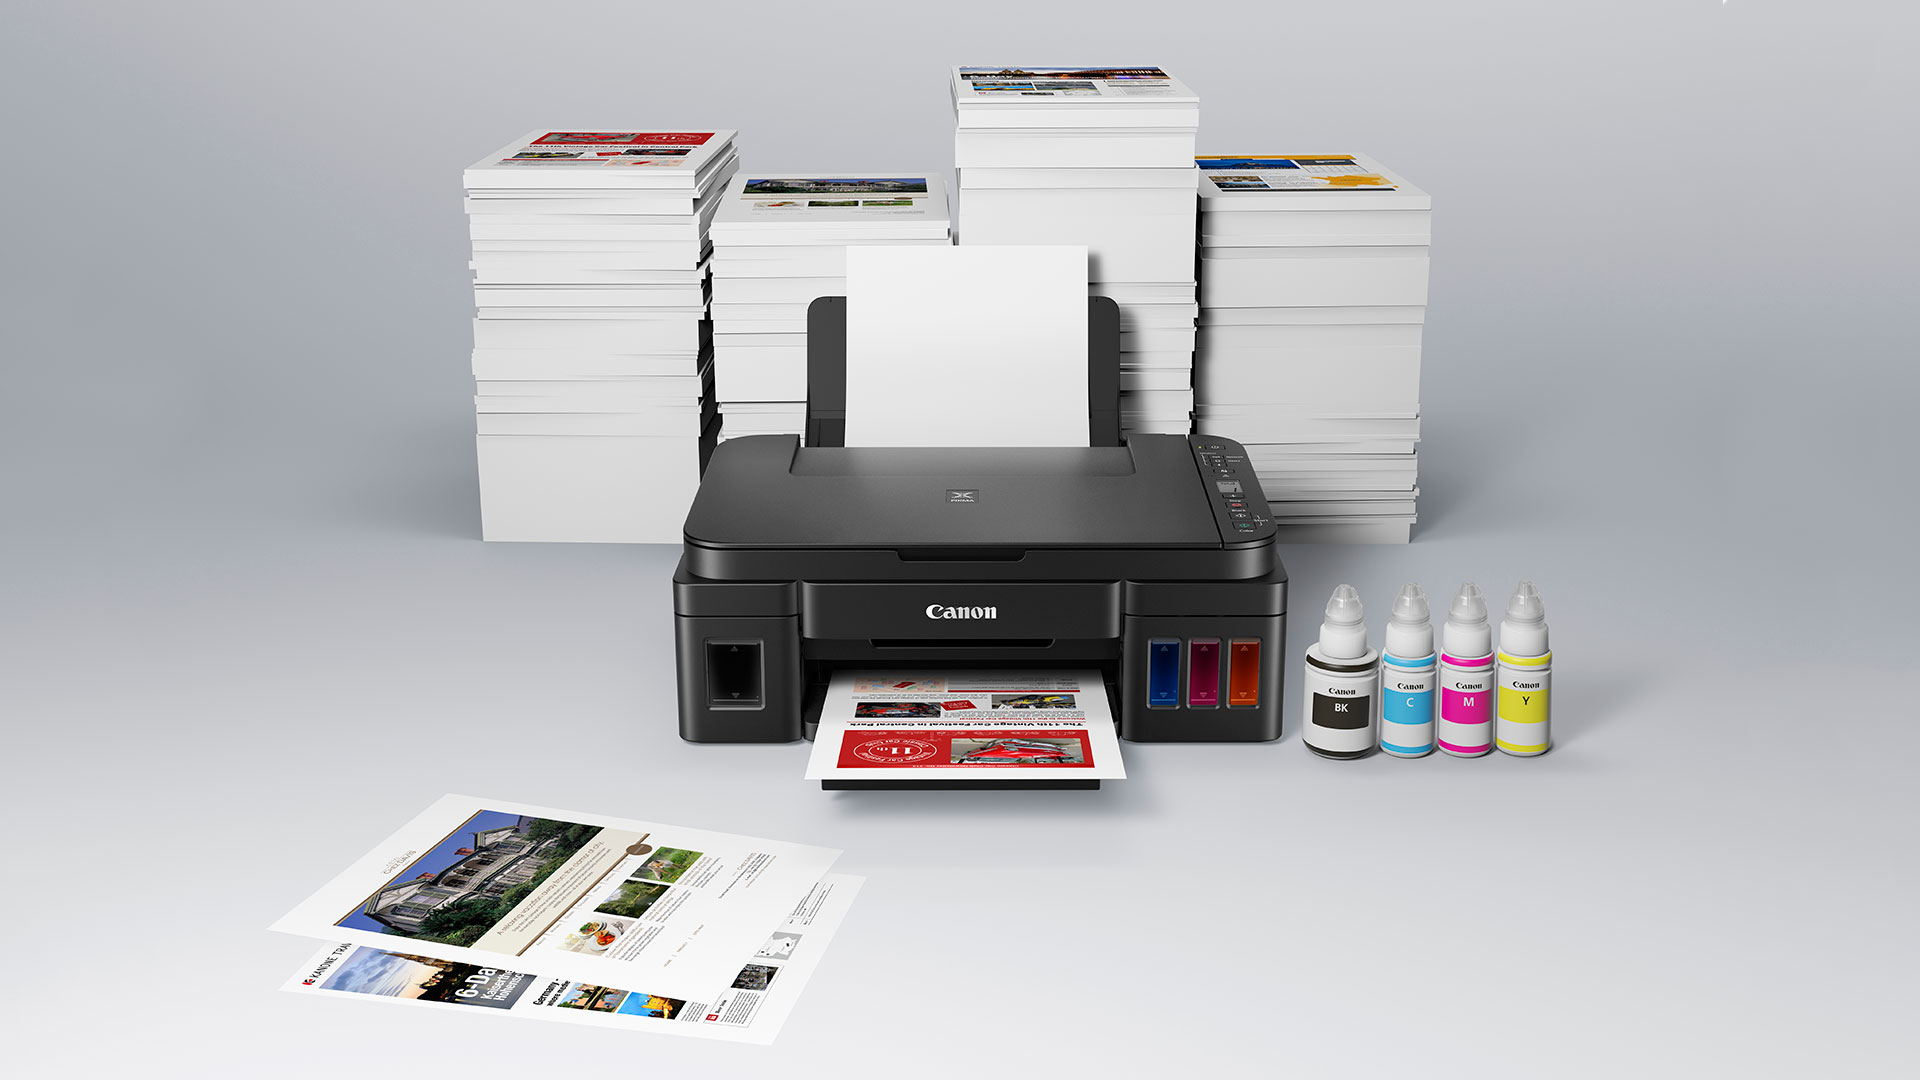 Les imprimantes HP ENVY: l'imprimante personnelle faite pour les